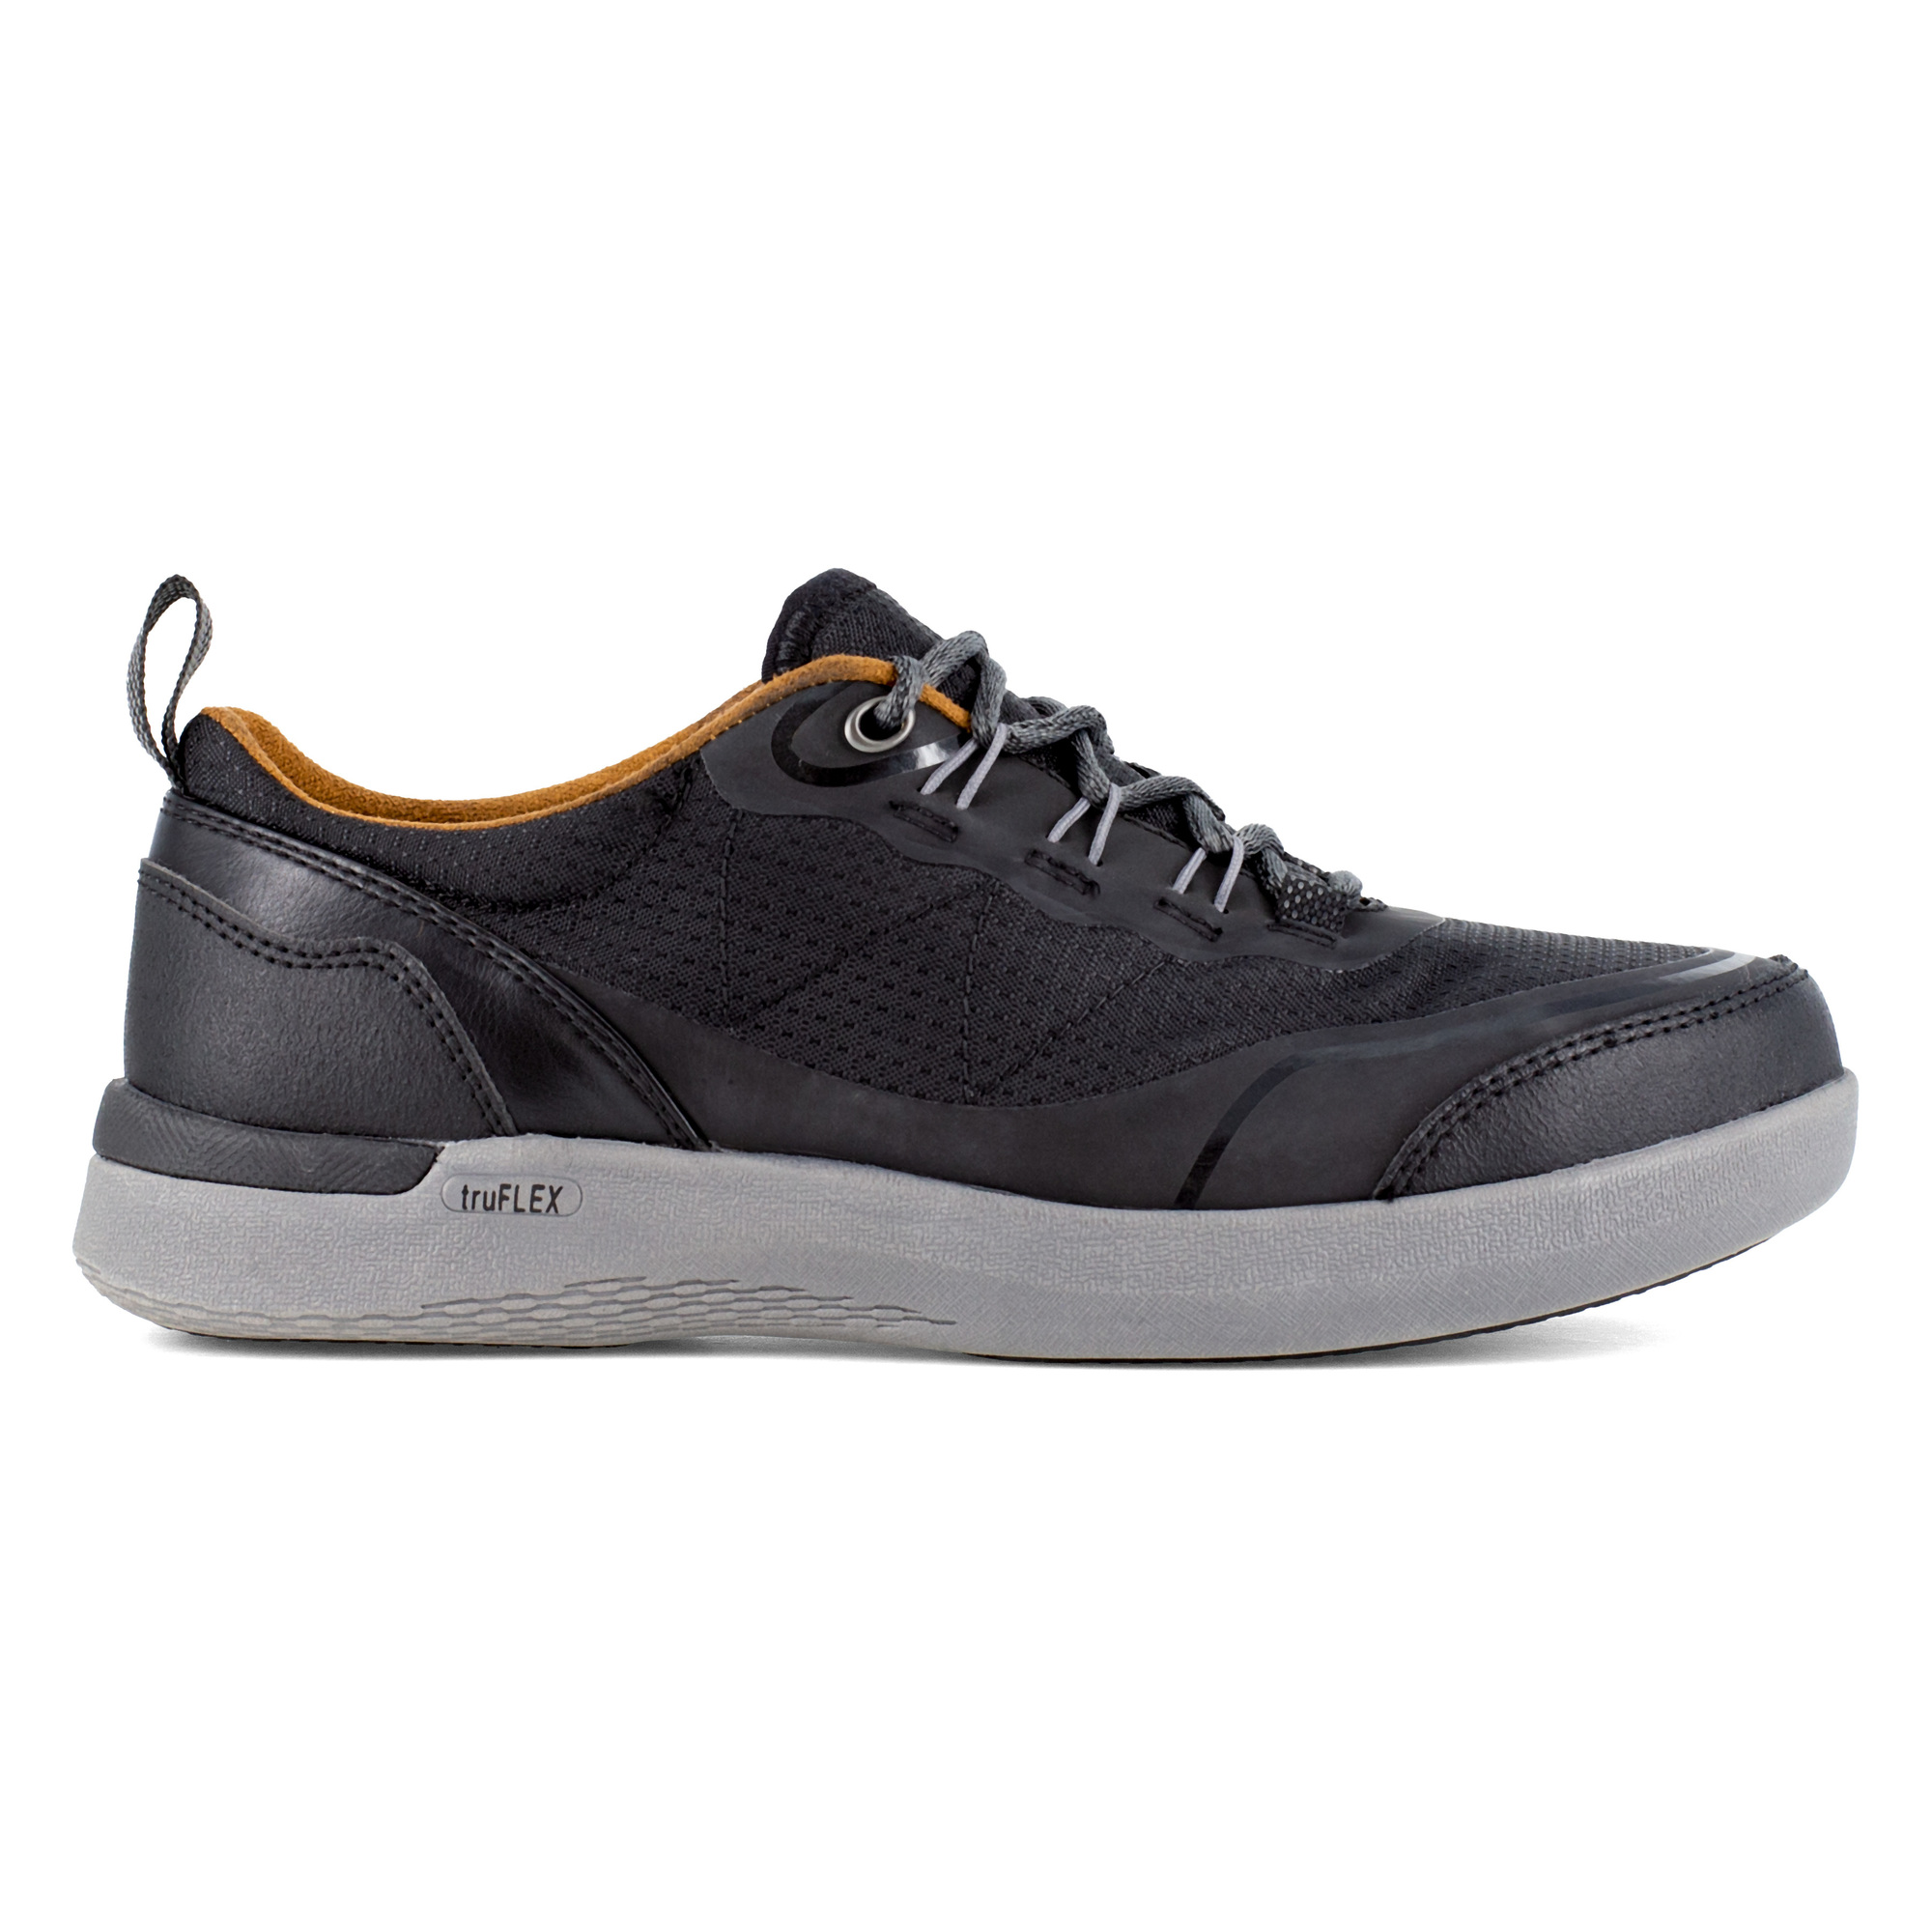 Rockport Works, Work Sneaker, Size 8 1/2, Width Wide, Color Black, Model RK687